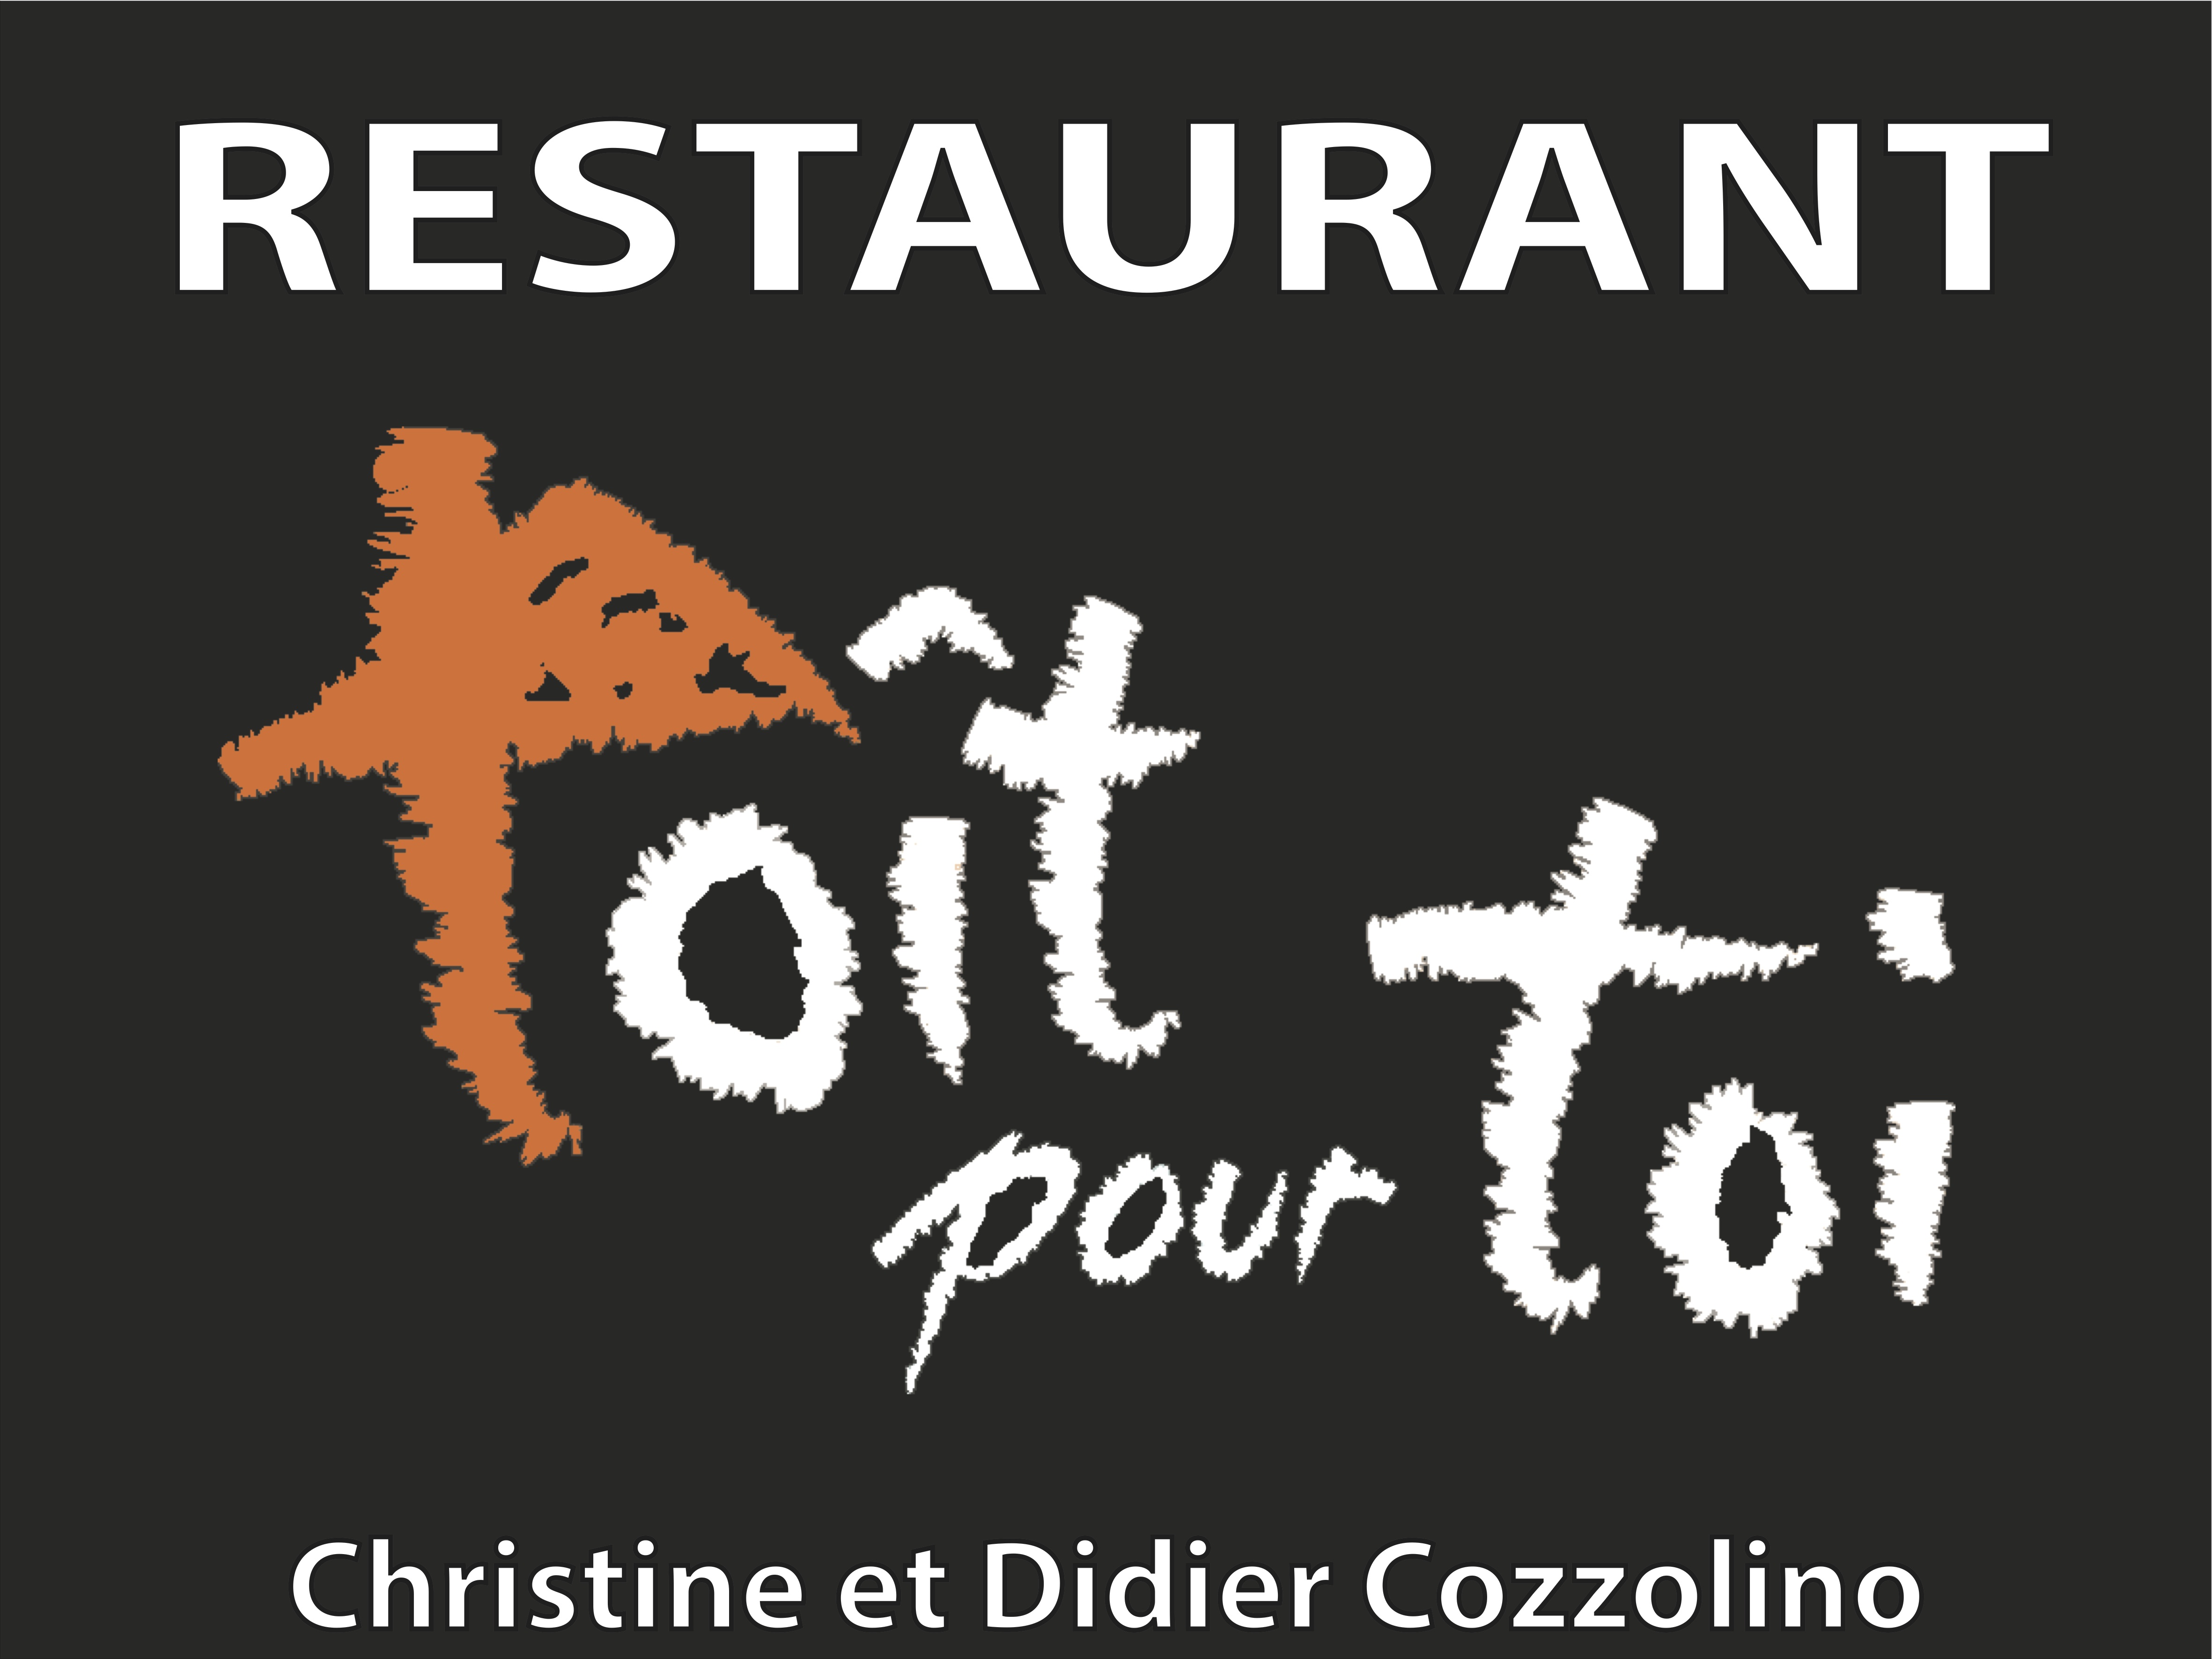 TOIT POUR TOI, restaurant Christine et Didier COZZOLINO